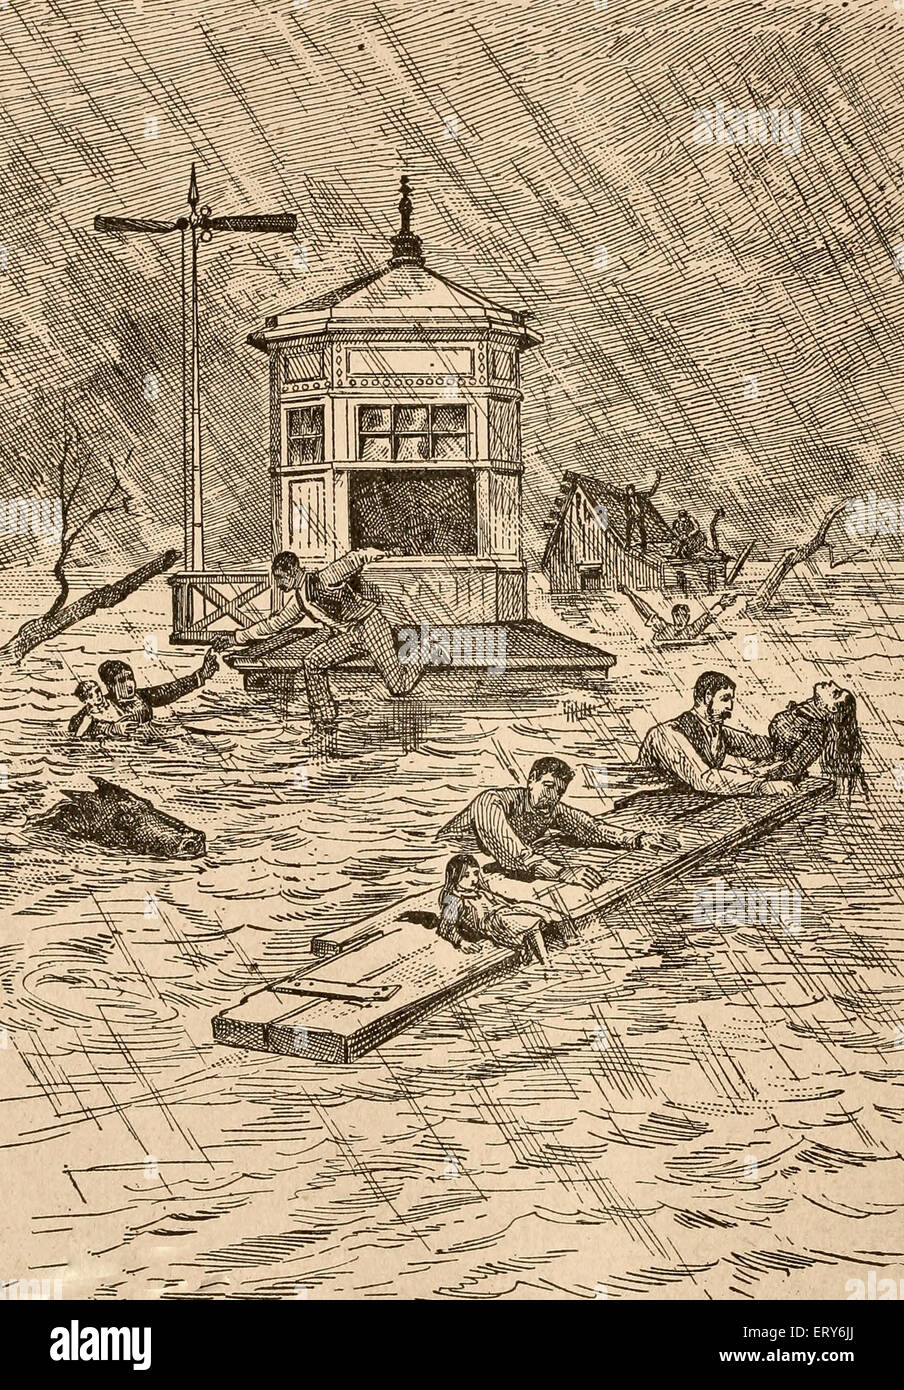 Great Flood of 1862 | Aon Edge